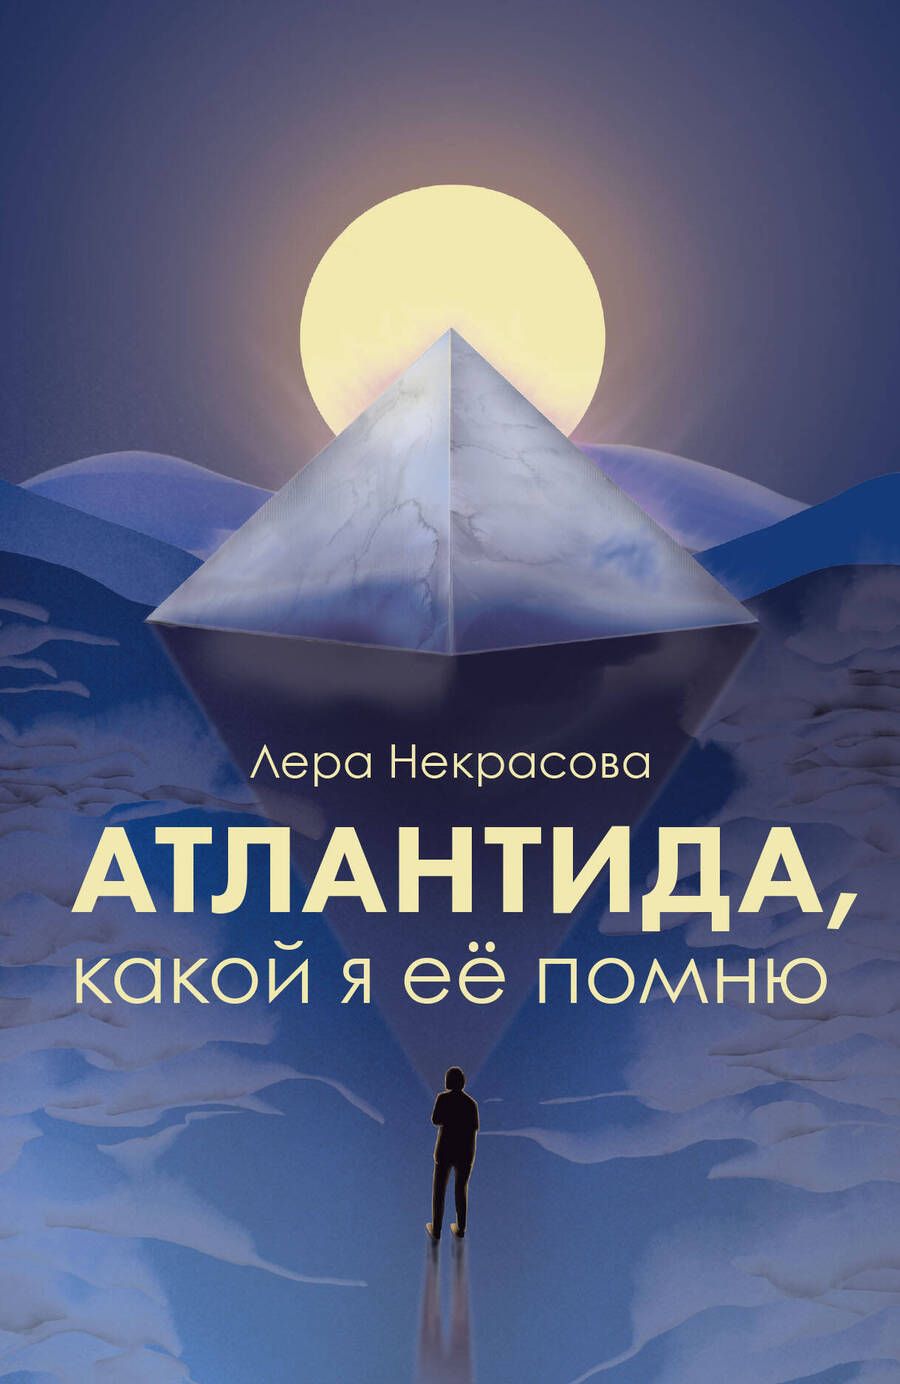 Обложка книги "Некрасова: Атлантида, какой я её помню"